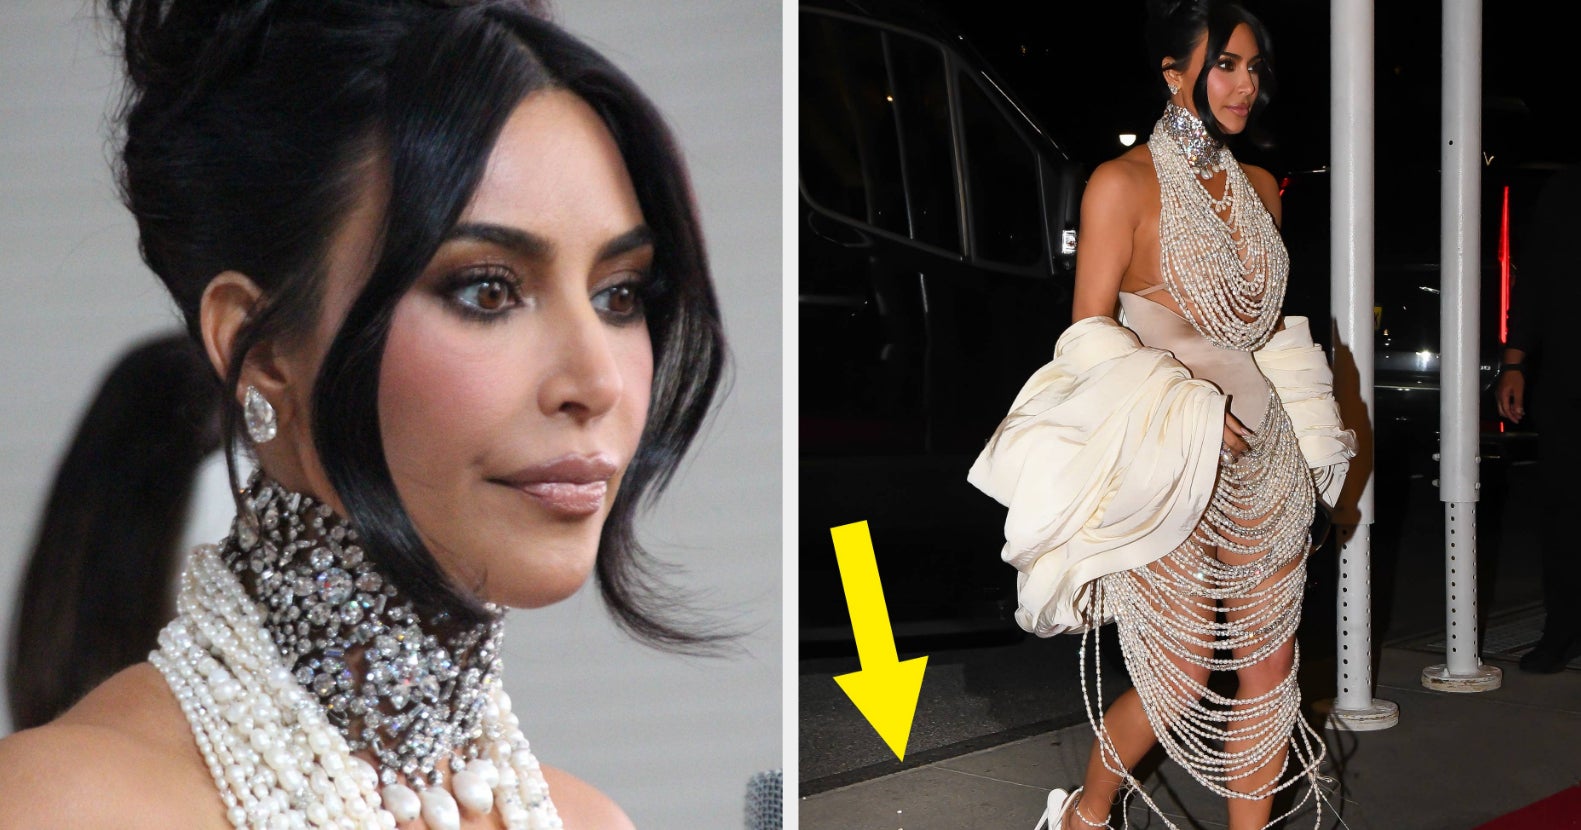 Kim Kardashian in Spanx to wear split skirt morning after Met Gala